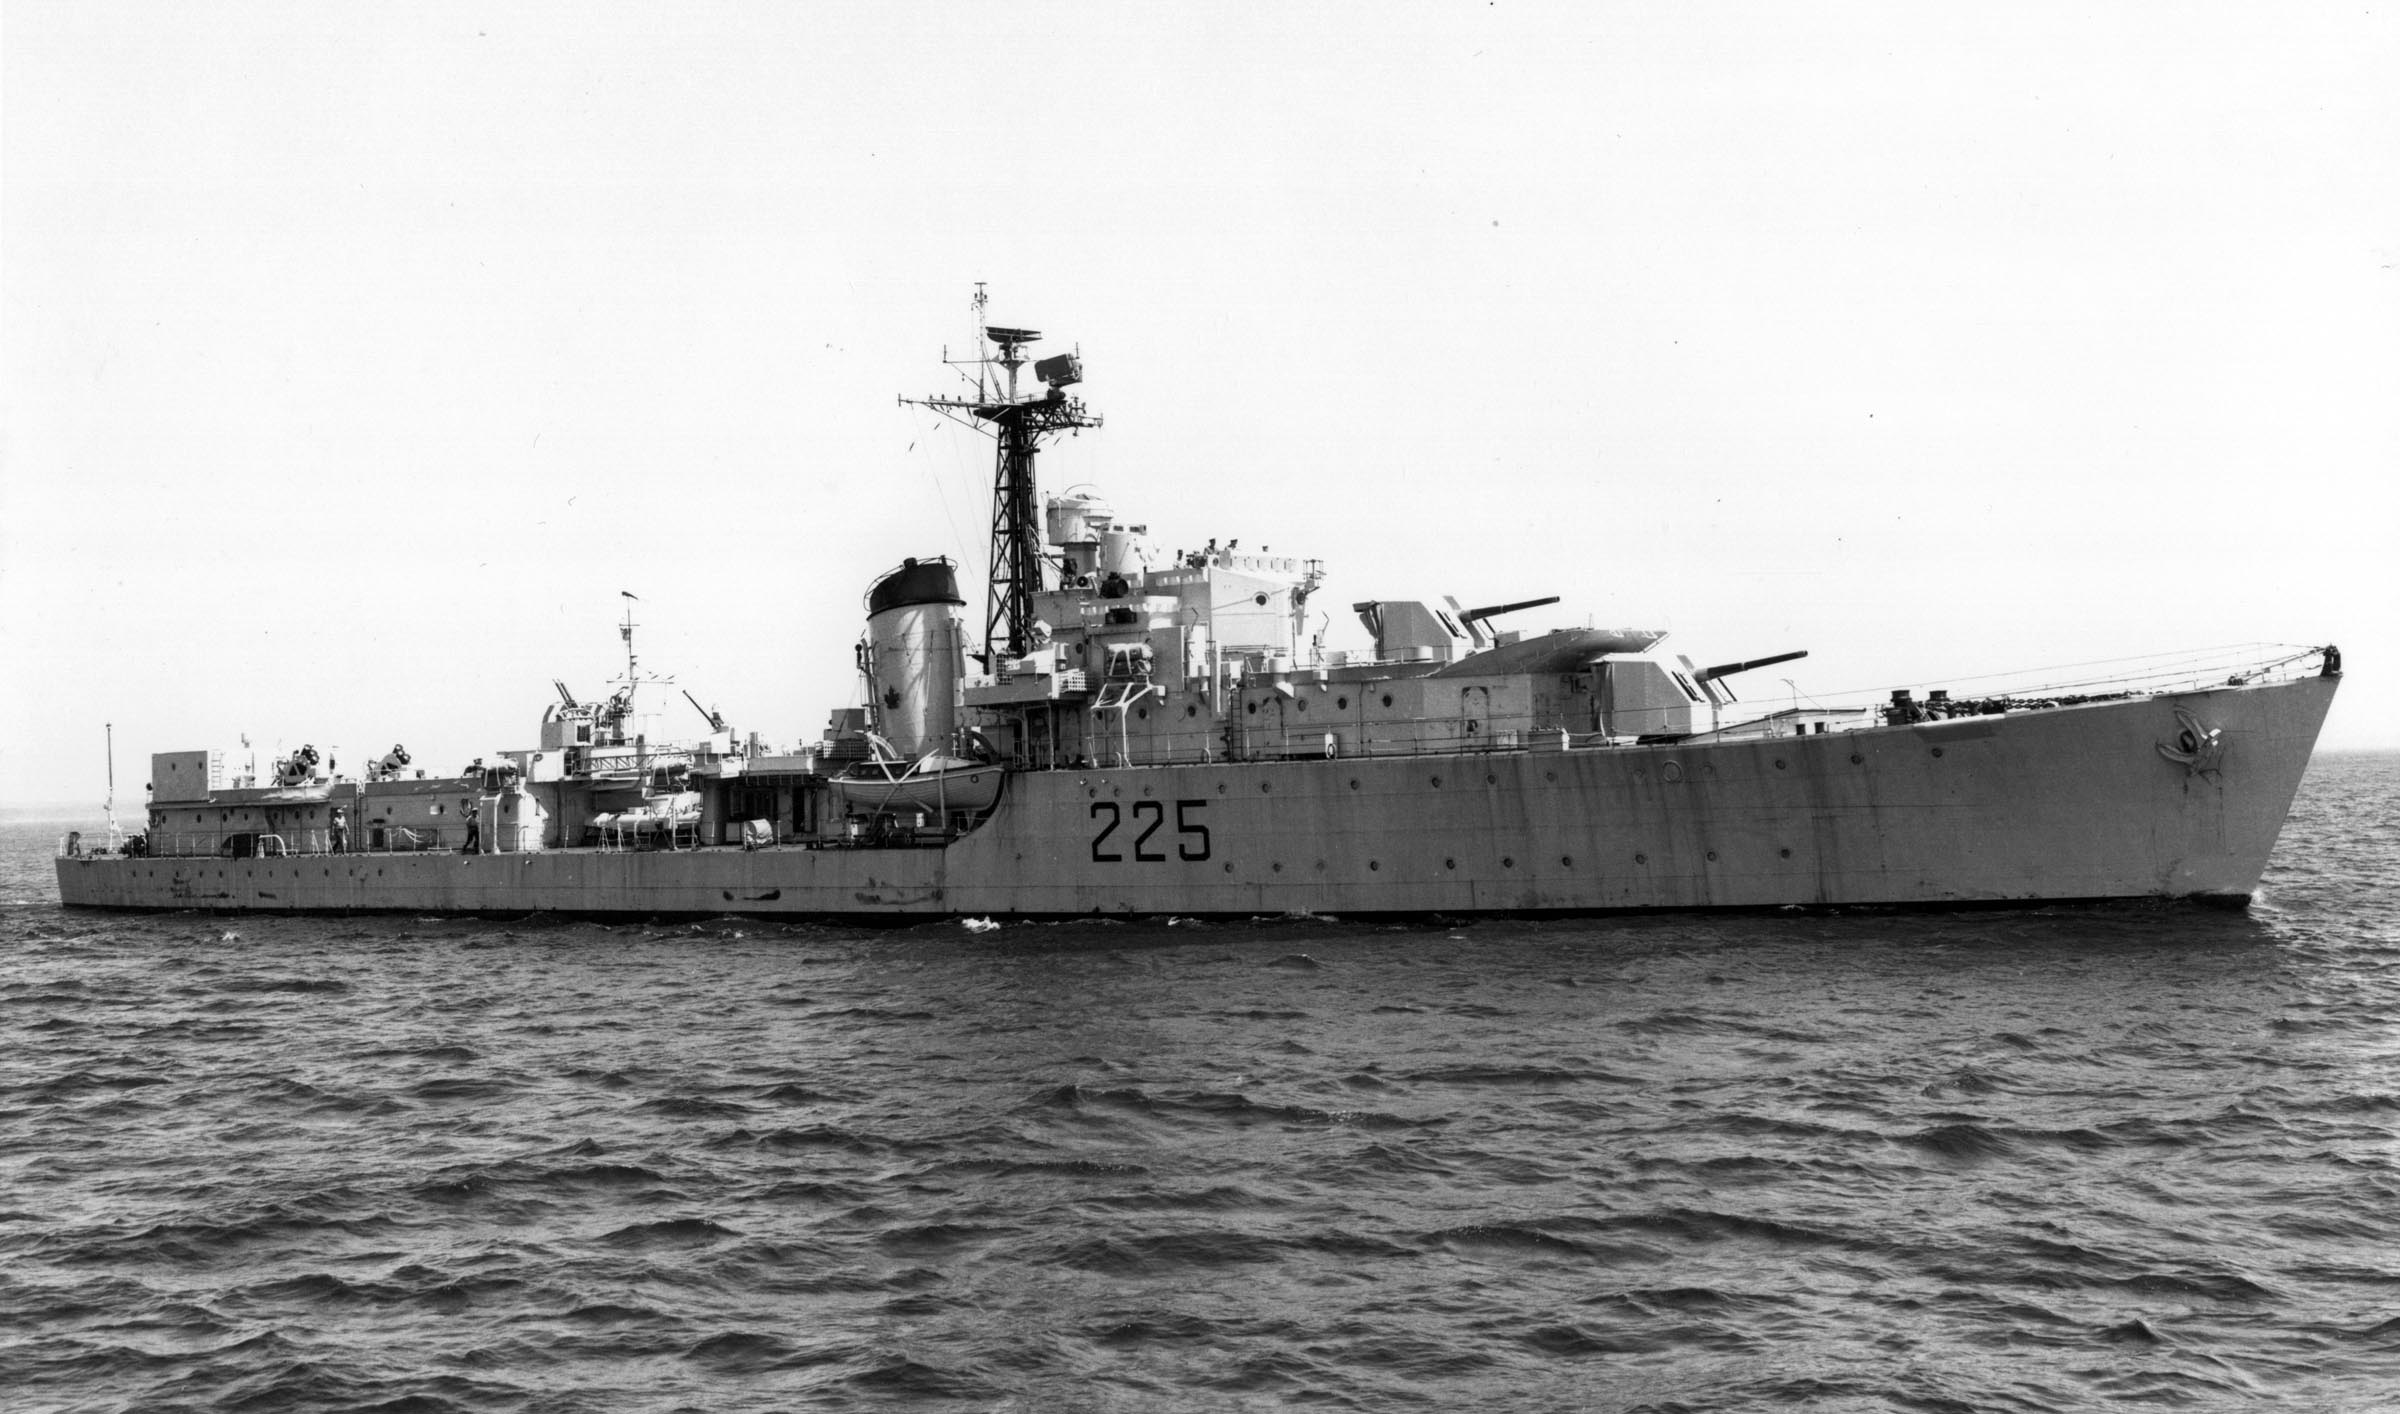 Post War HMCS SIOUX